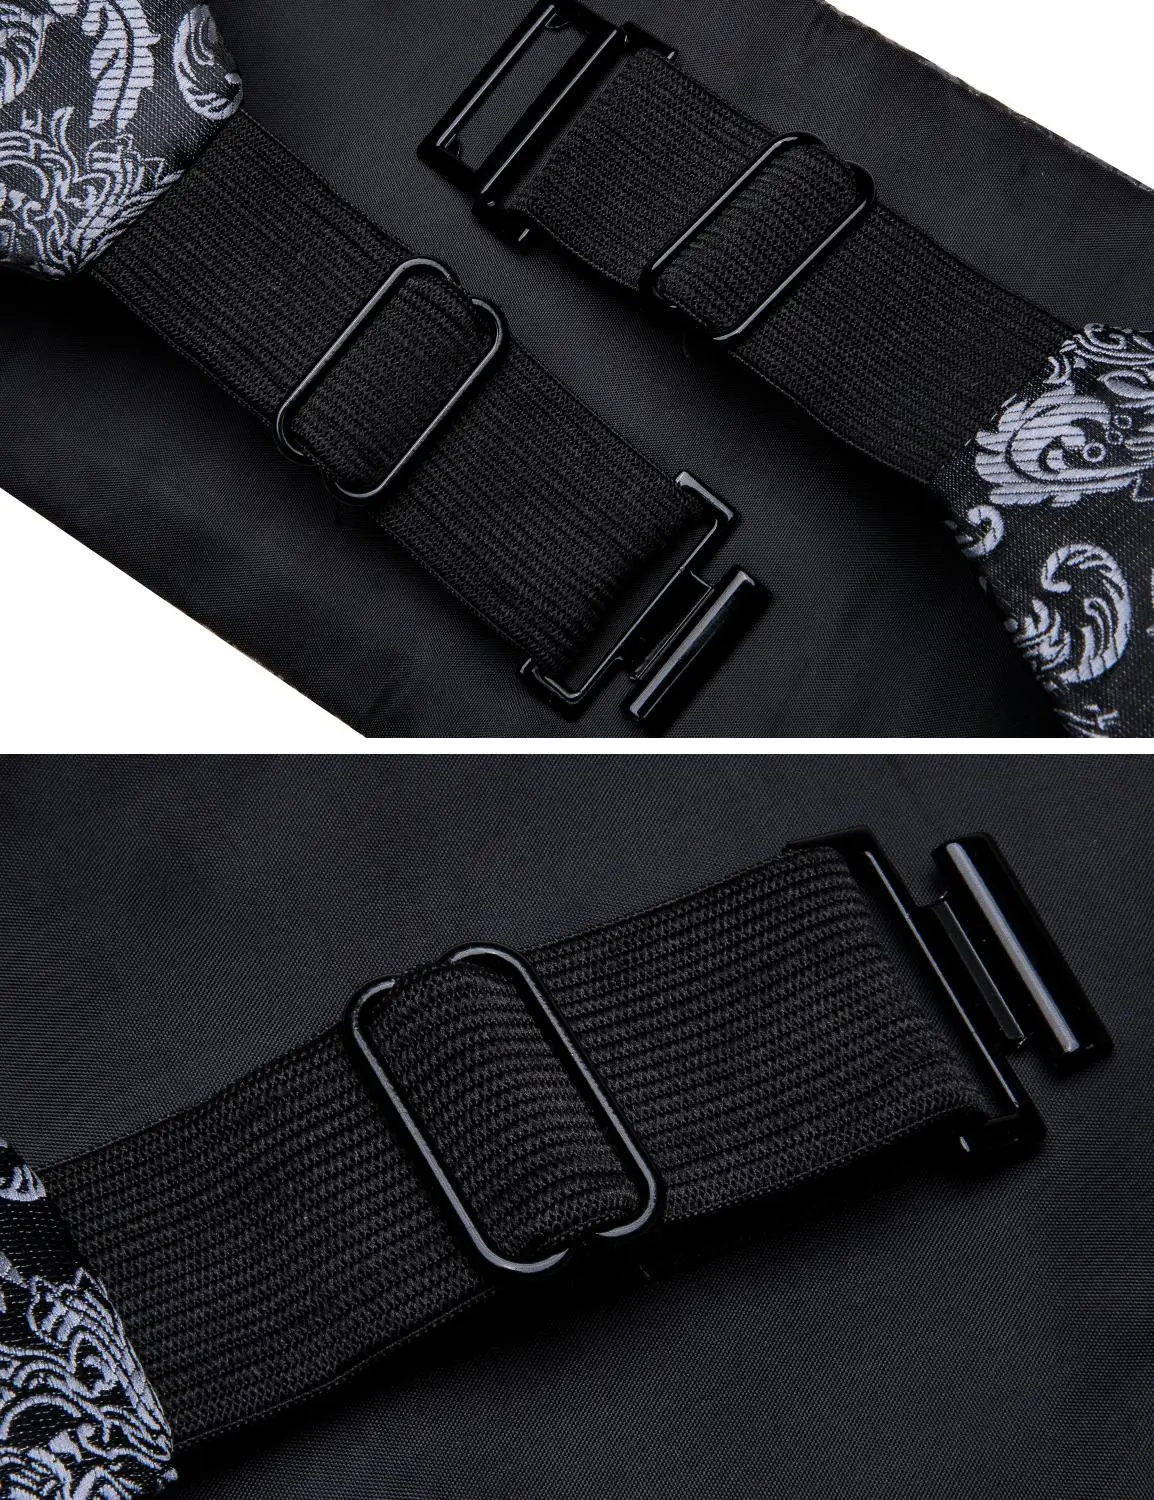 Черный Пейсли для мужчин галстук-бабочка Шелковый серый пояс цветочный набор карман Квадратные запонки формальный для смокинга костюм Барри. WangYY-1004